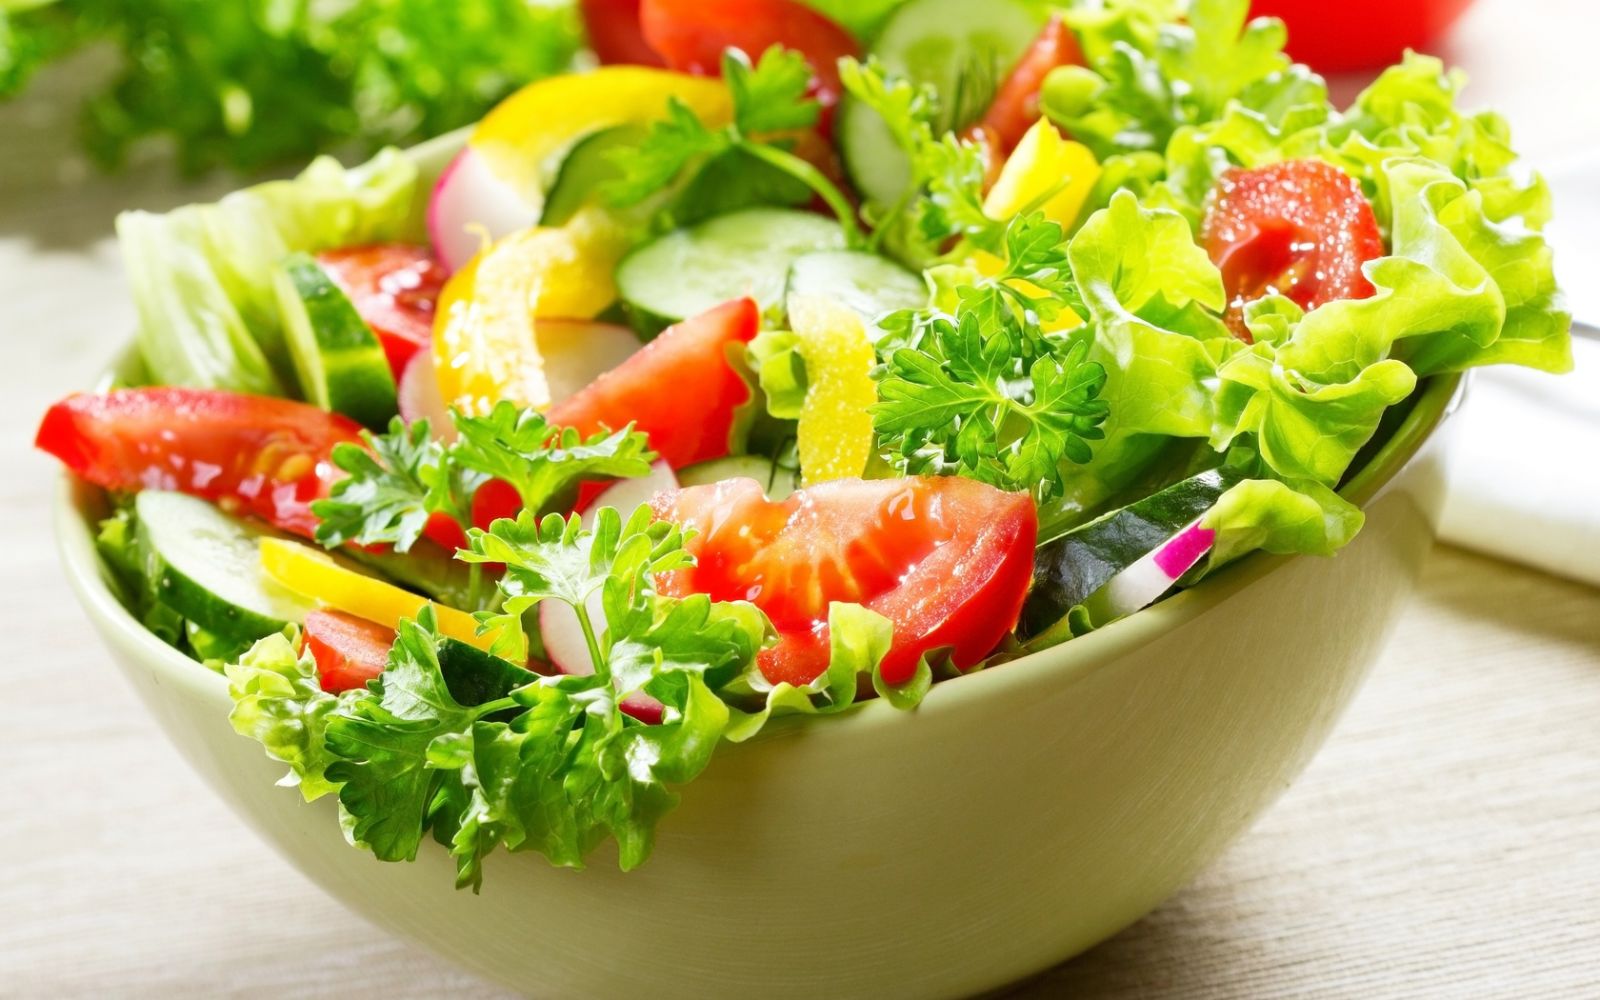 Vì sao giảm cân luôn "gắn liền" với salad?